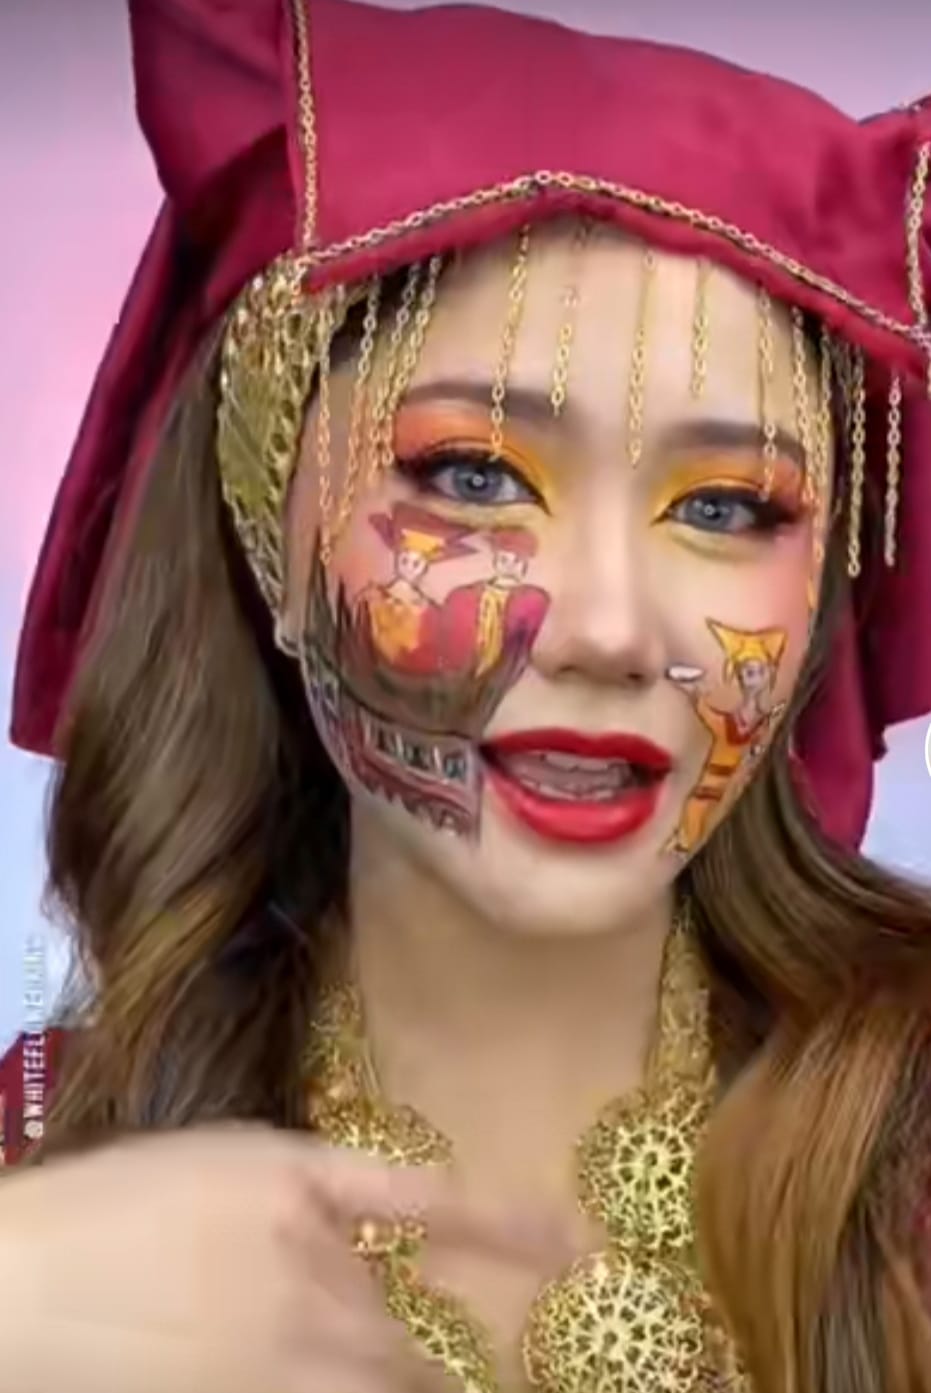 Rias wajah dipadukan gambar kesenian khas Indonesia, skill makeup wanita ini bikin terpukau